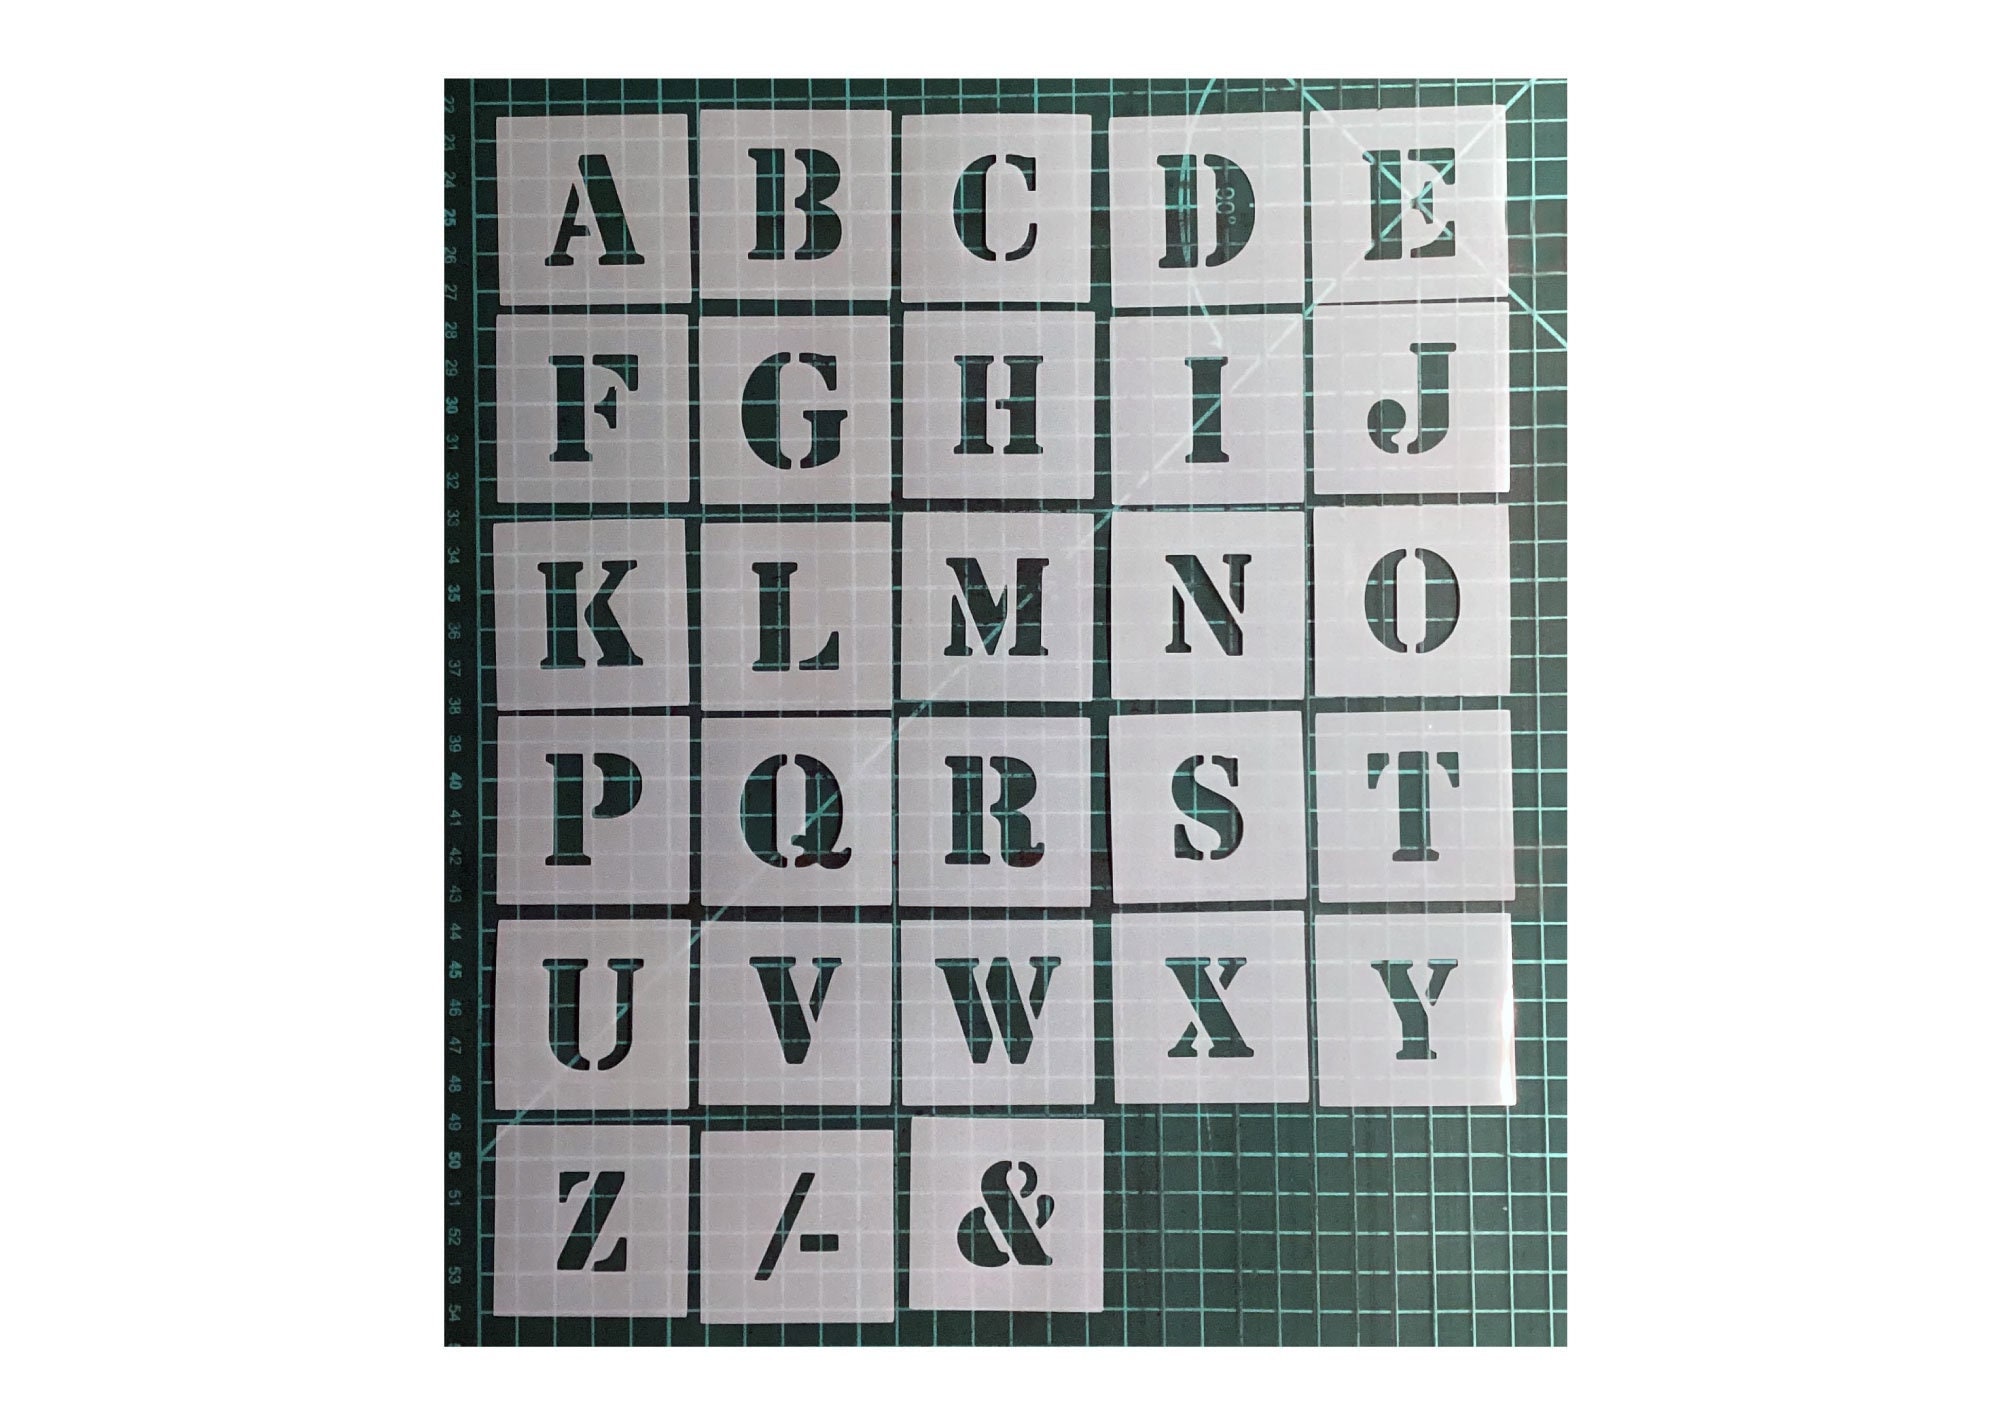 Cursive Alphabet Stencils - Single letters or entire alphabet